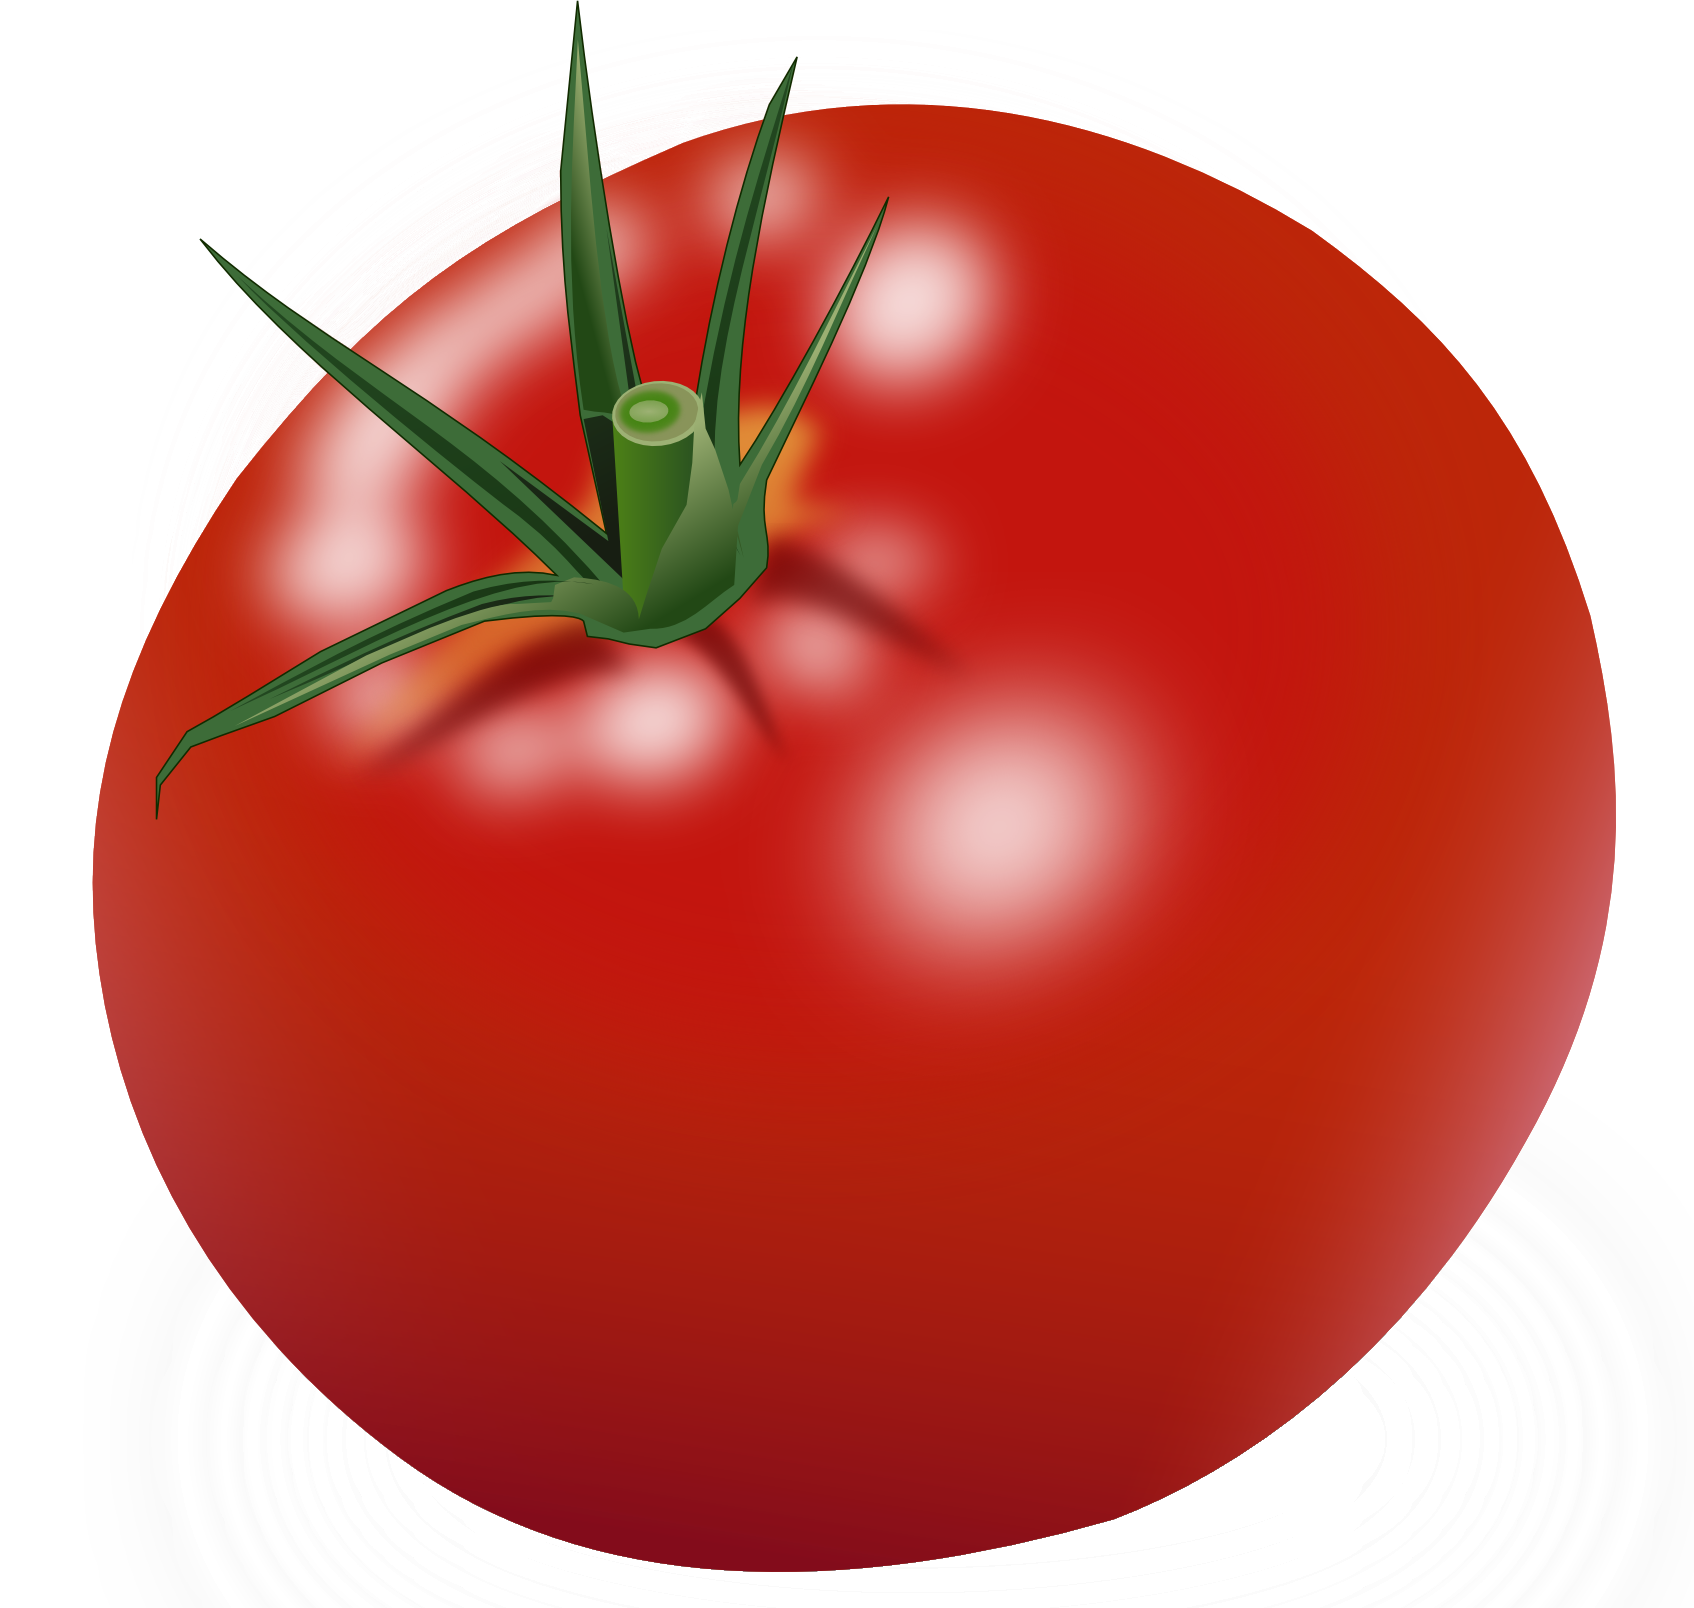 큰 빨간 토마토